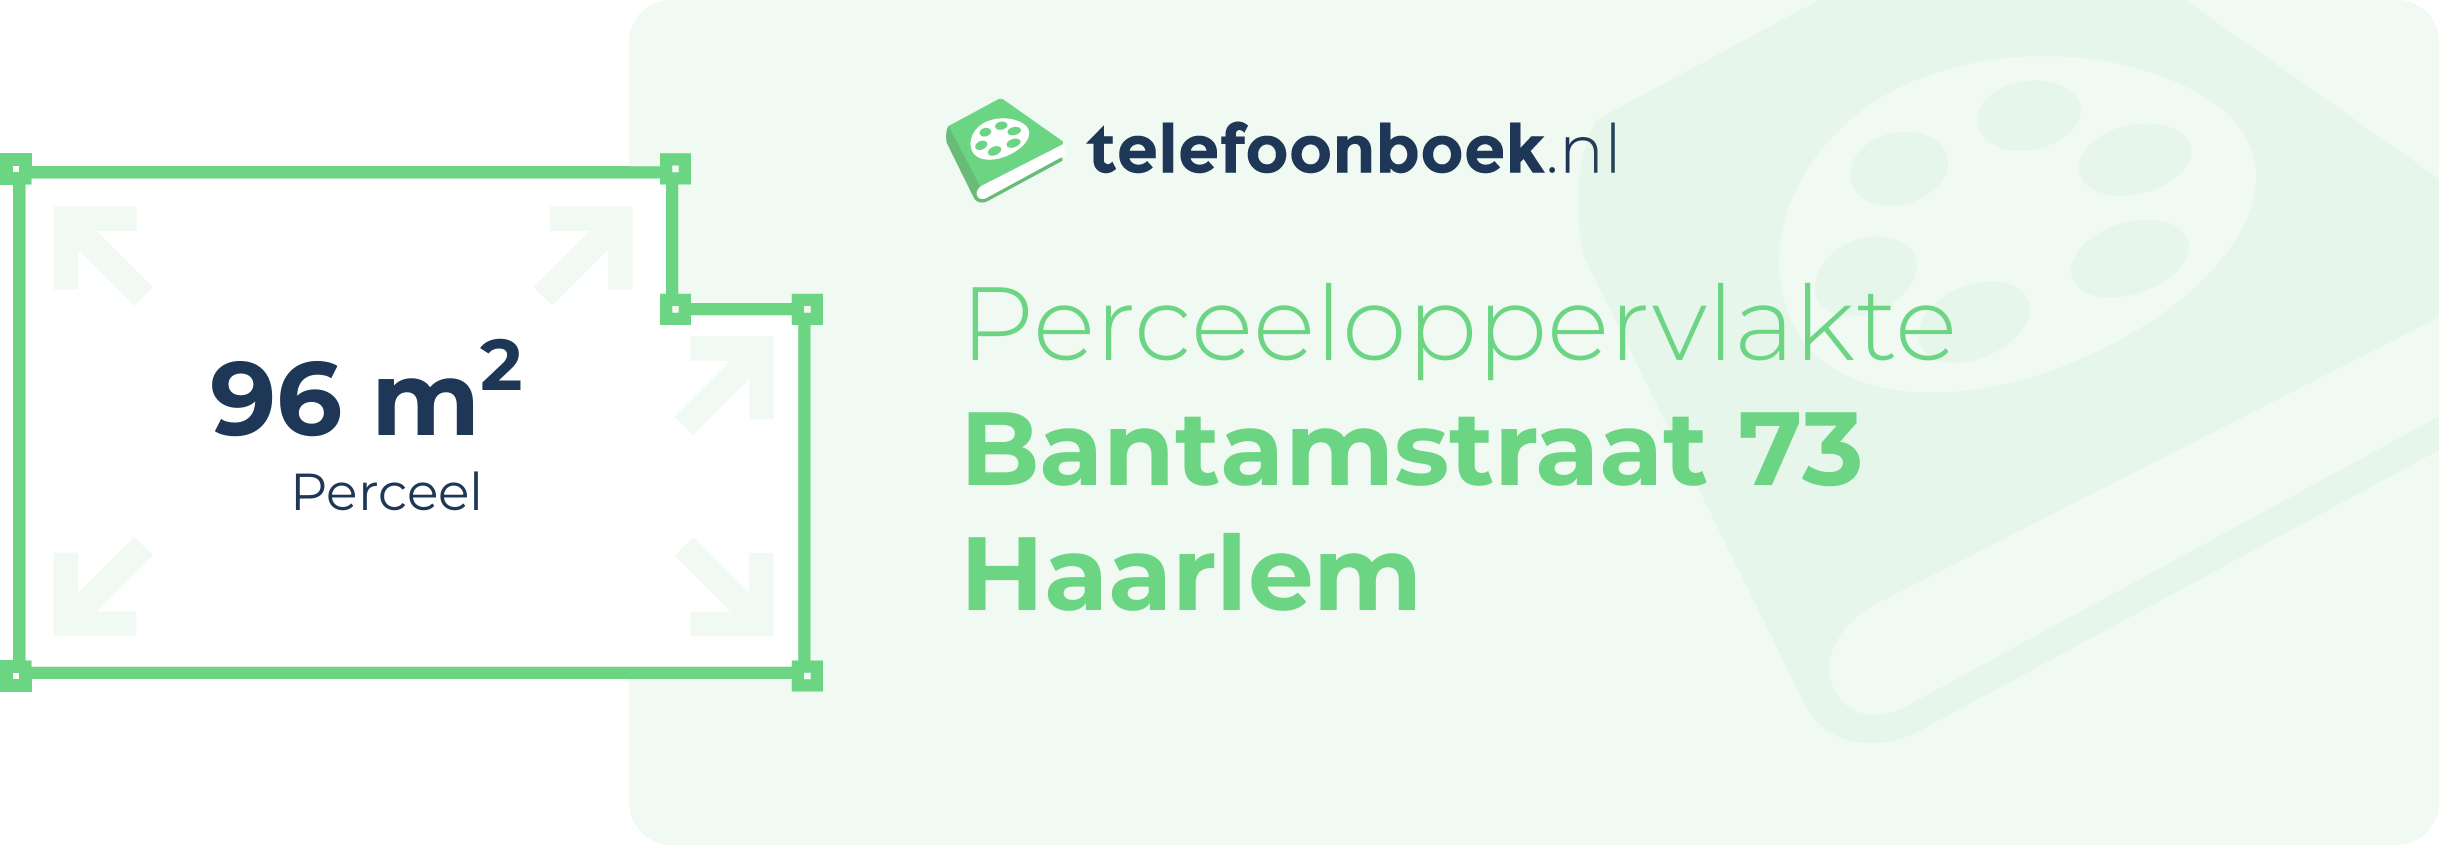 Perceeloppervlakte Bantamstraat 73 Haarlem